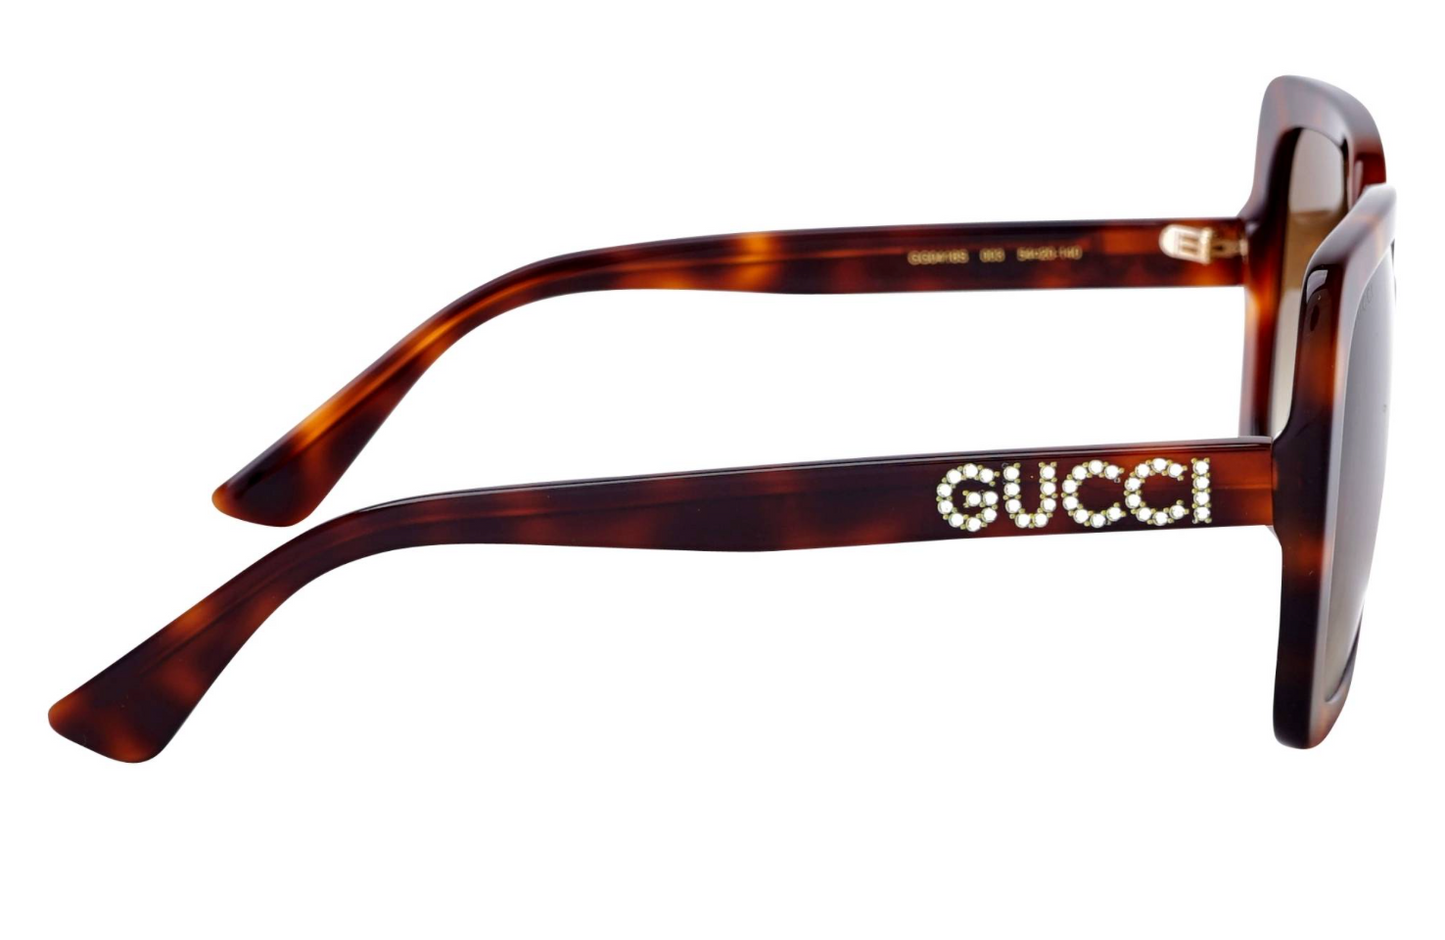 Gucci GG0418S-003 54mm New Sunglasses